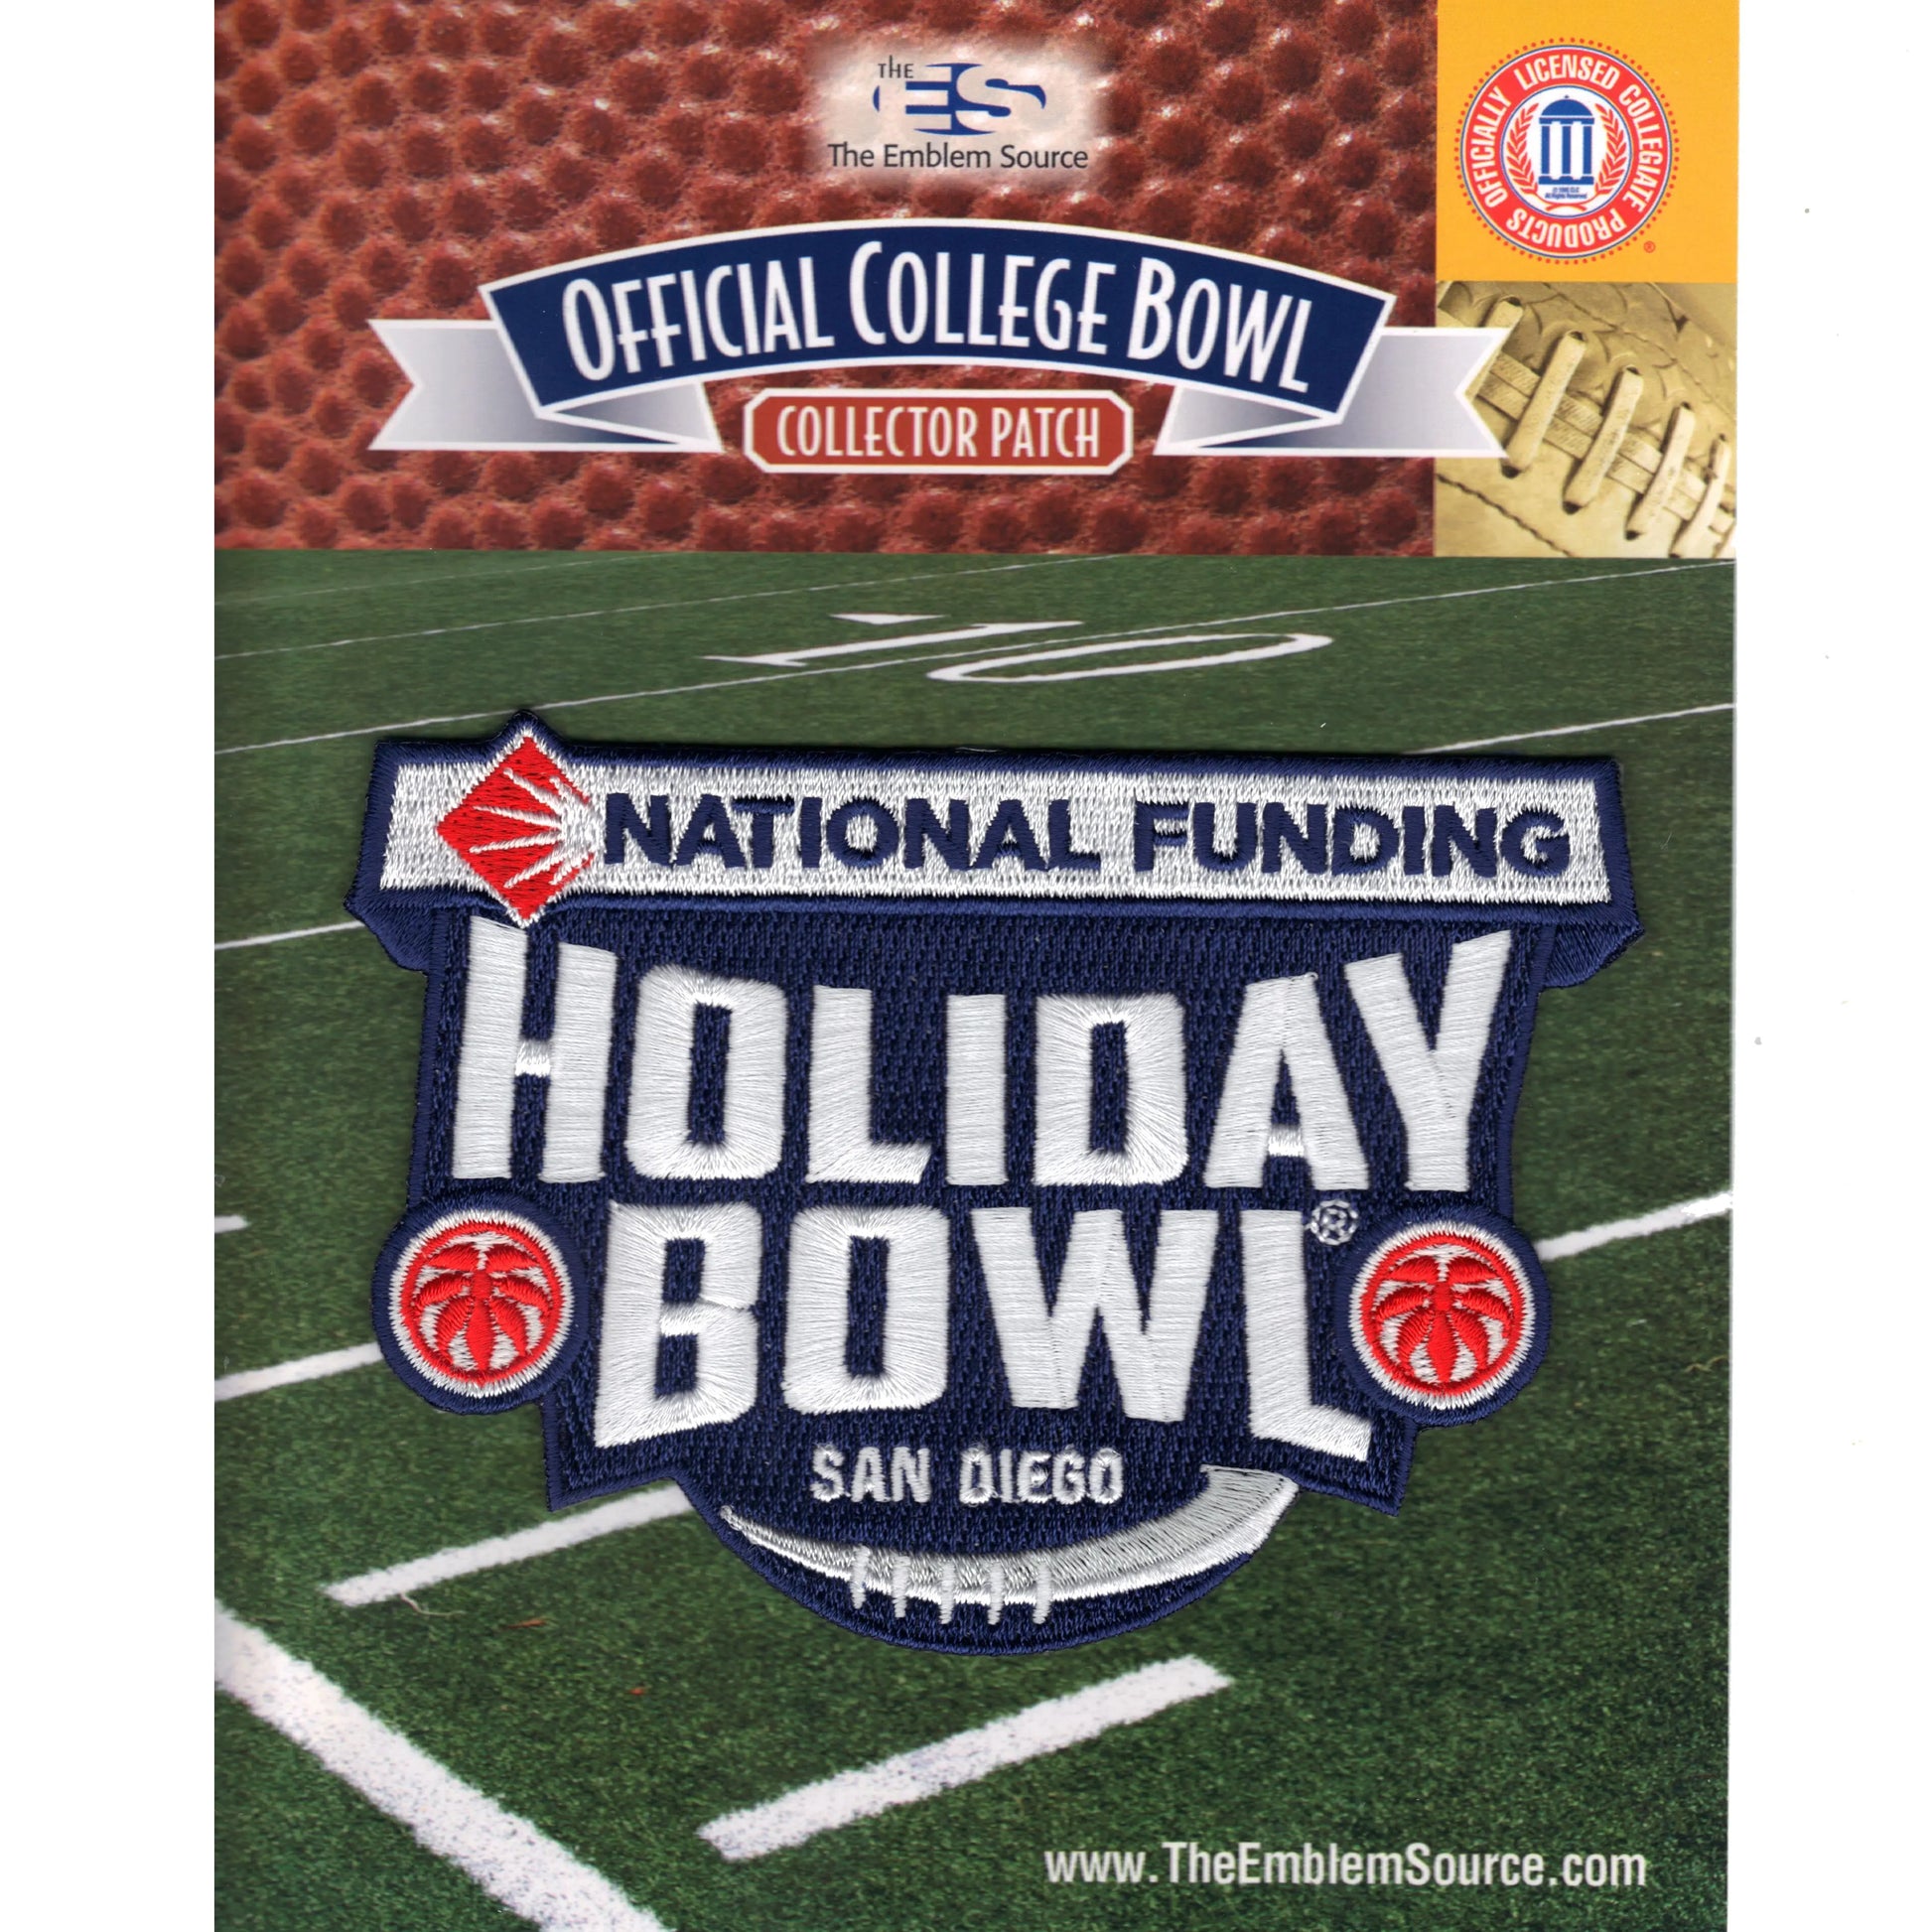 2016 National University Holiday Bowl Jersey Patch Minnesota vs. Washington St. 